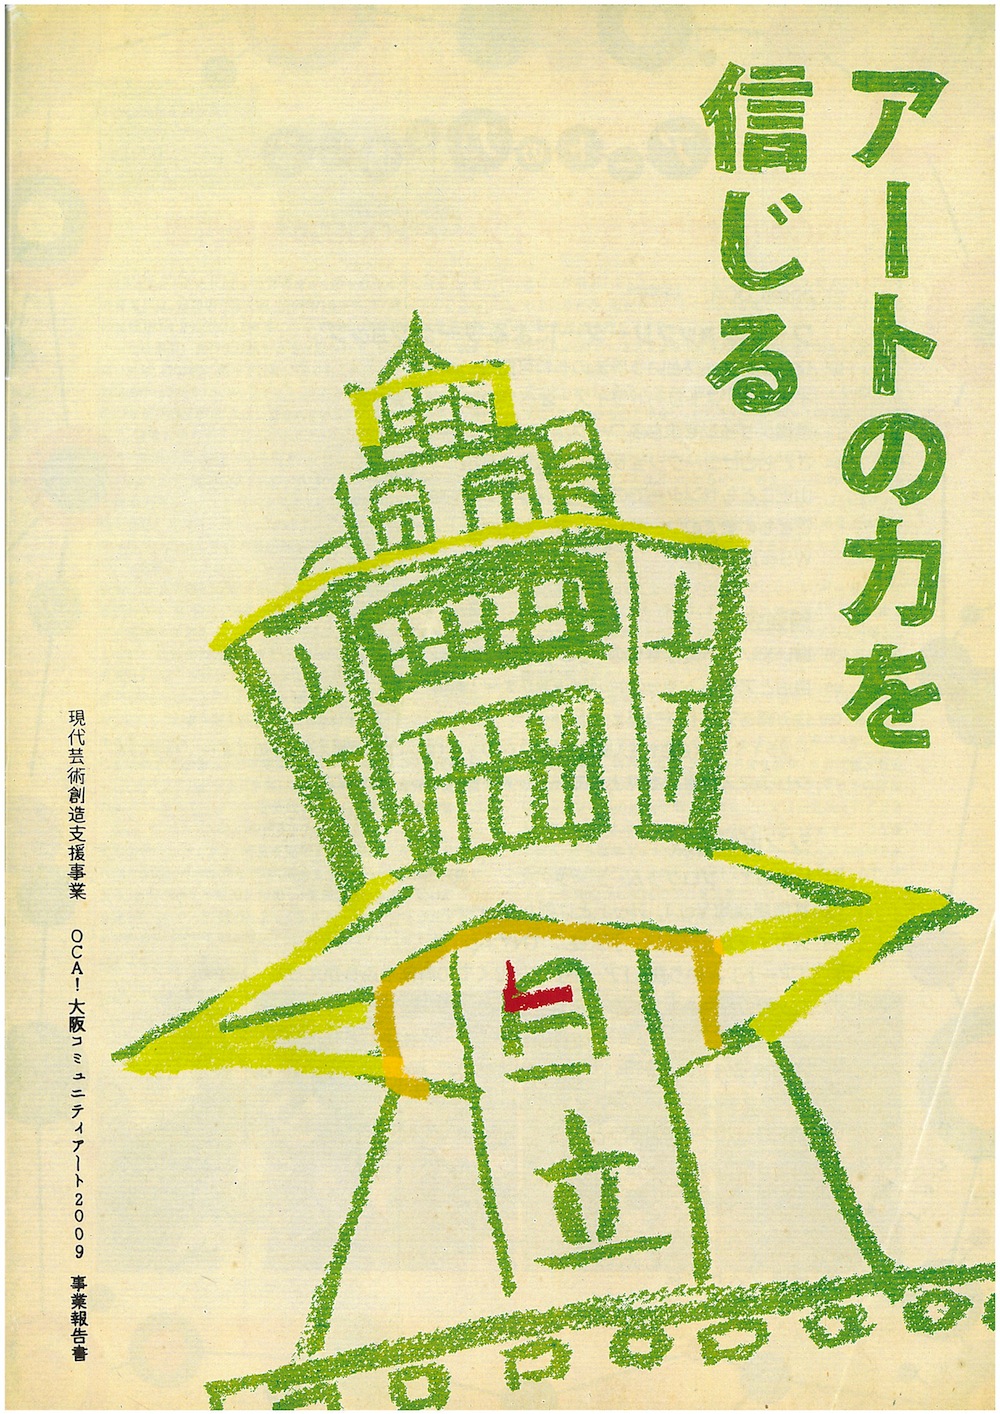 現代芸術創造支援事業OCA!大阪コミュニティアート OCA!報告書「アートの力を信じる」